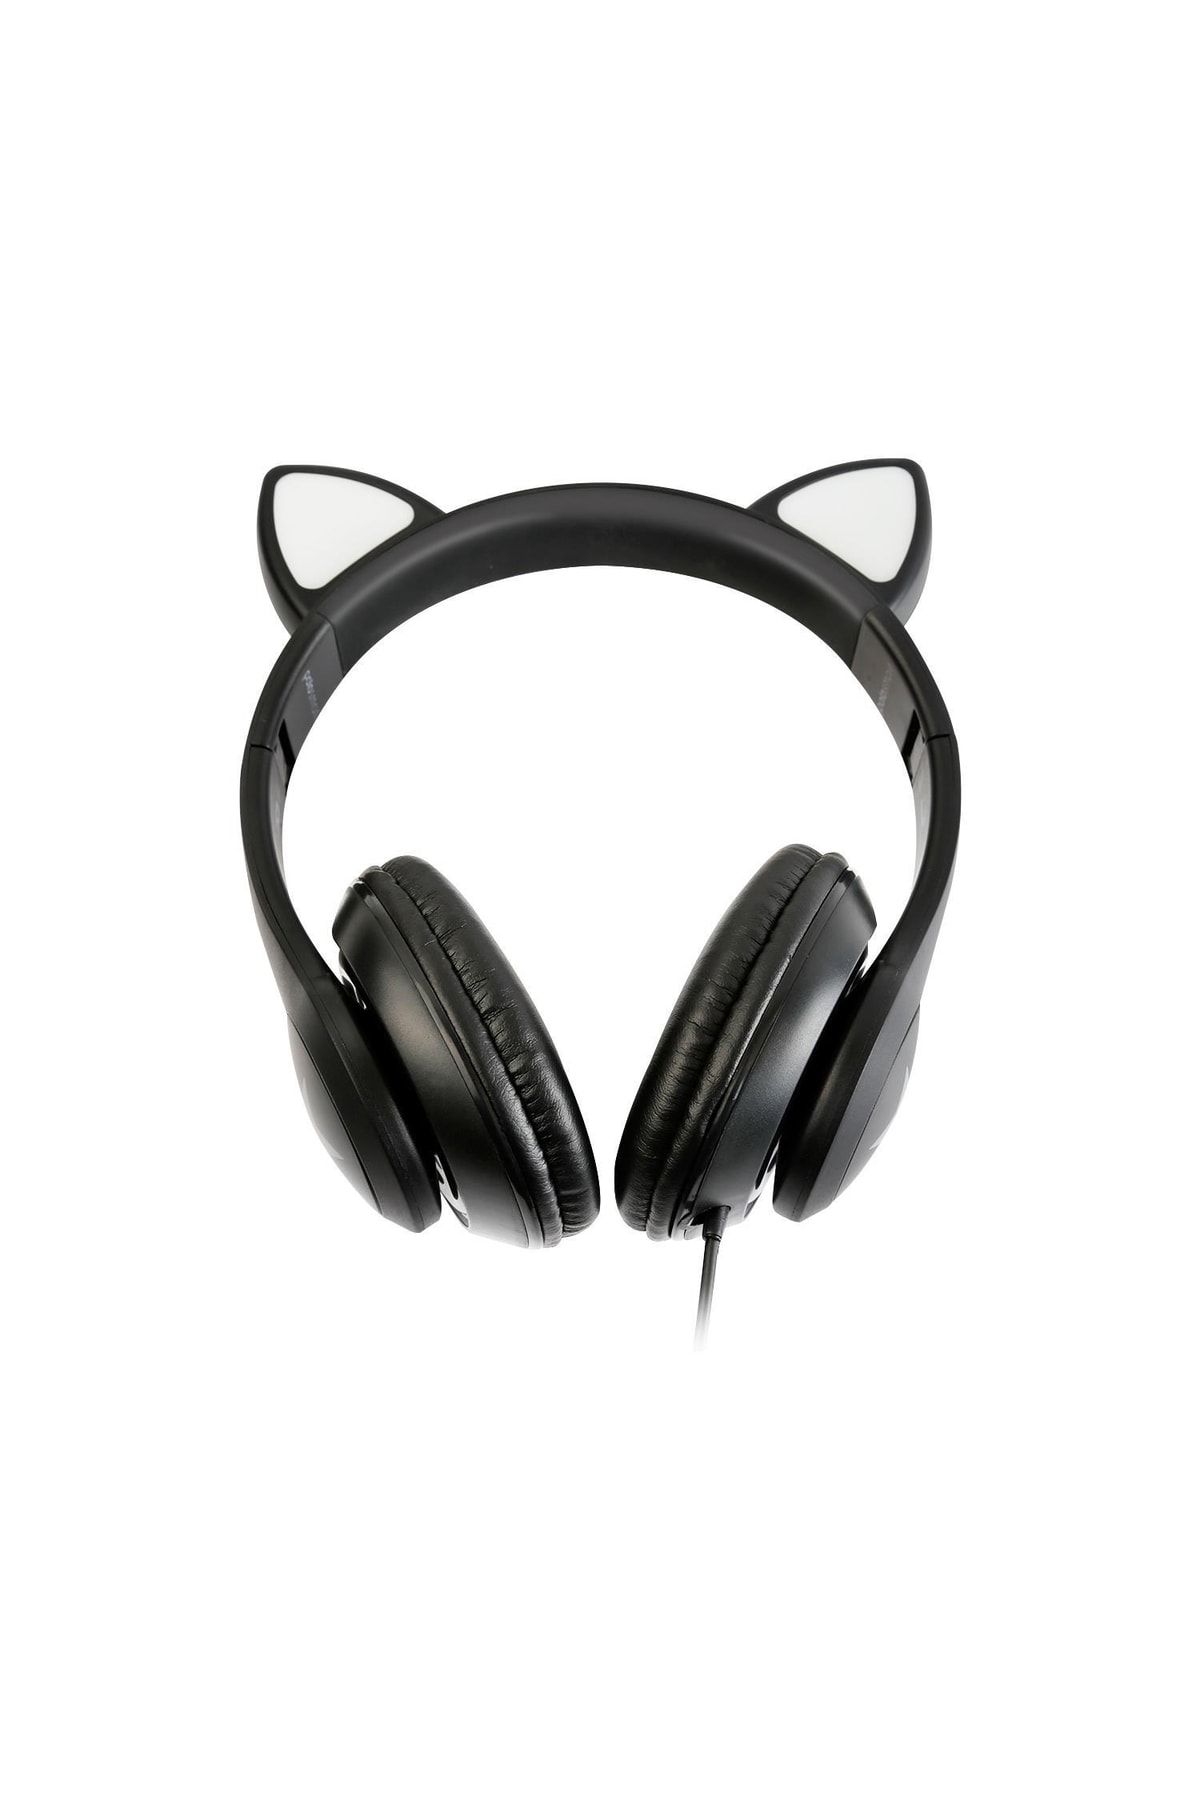 Polosmart Fs56 Kedi Figürlü Kablolu Mikrofonlu Kulaküstü Kulaklık Siyah